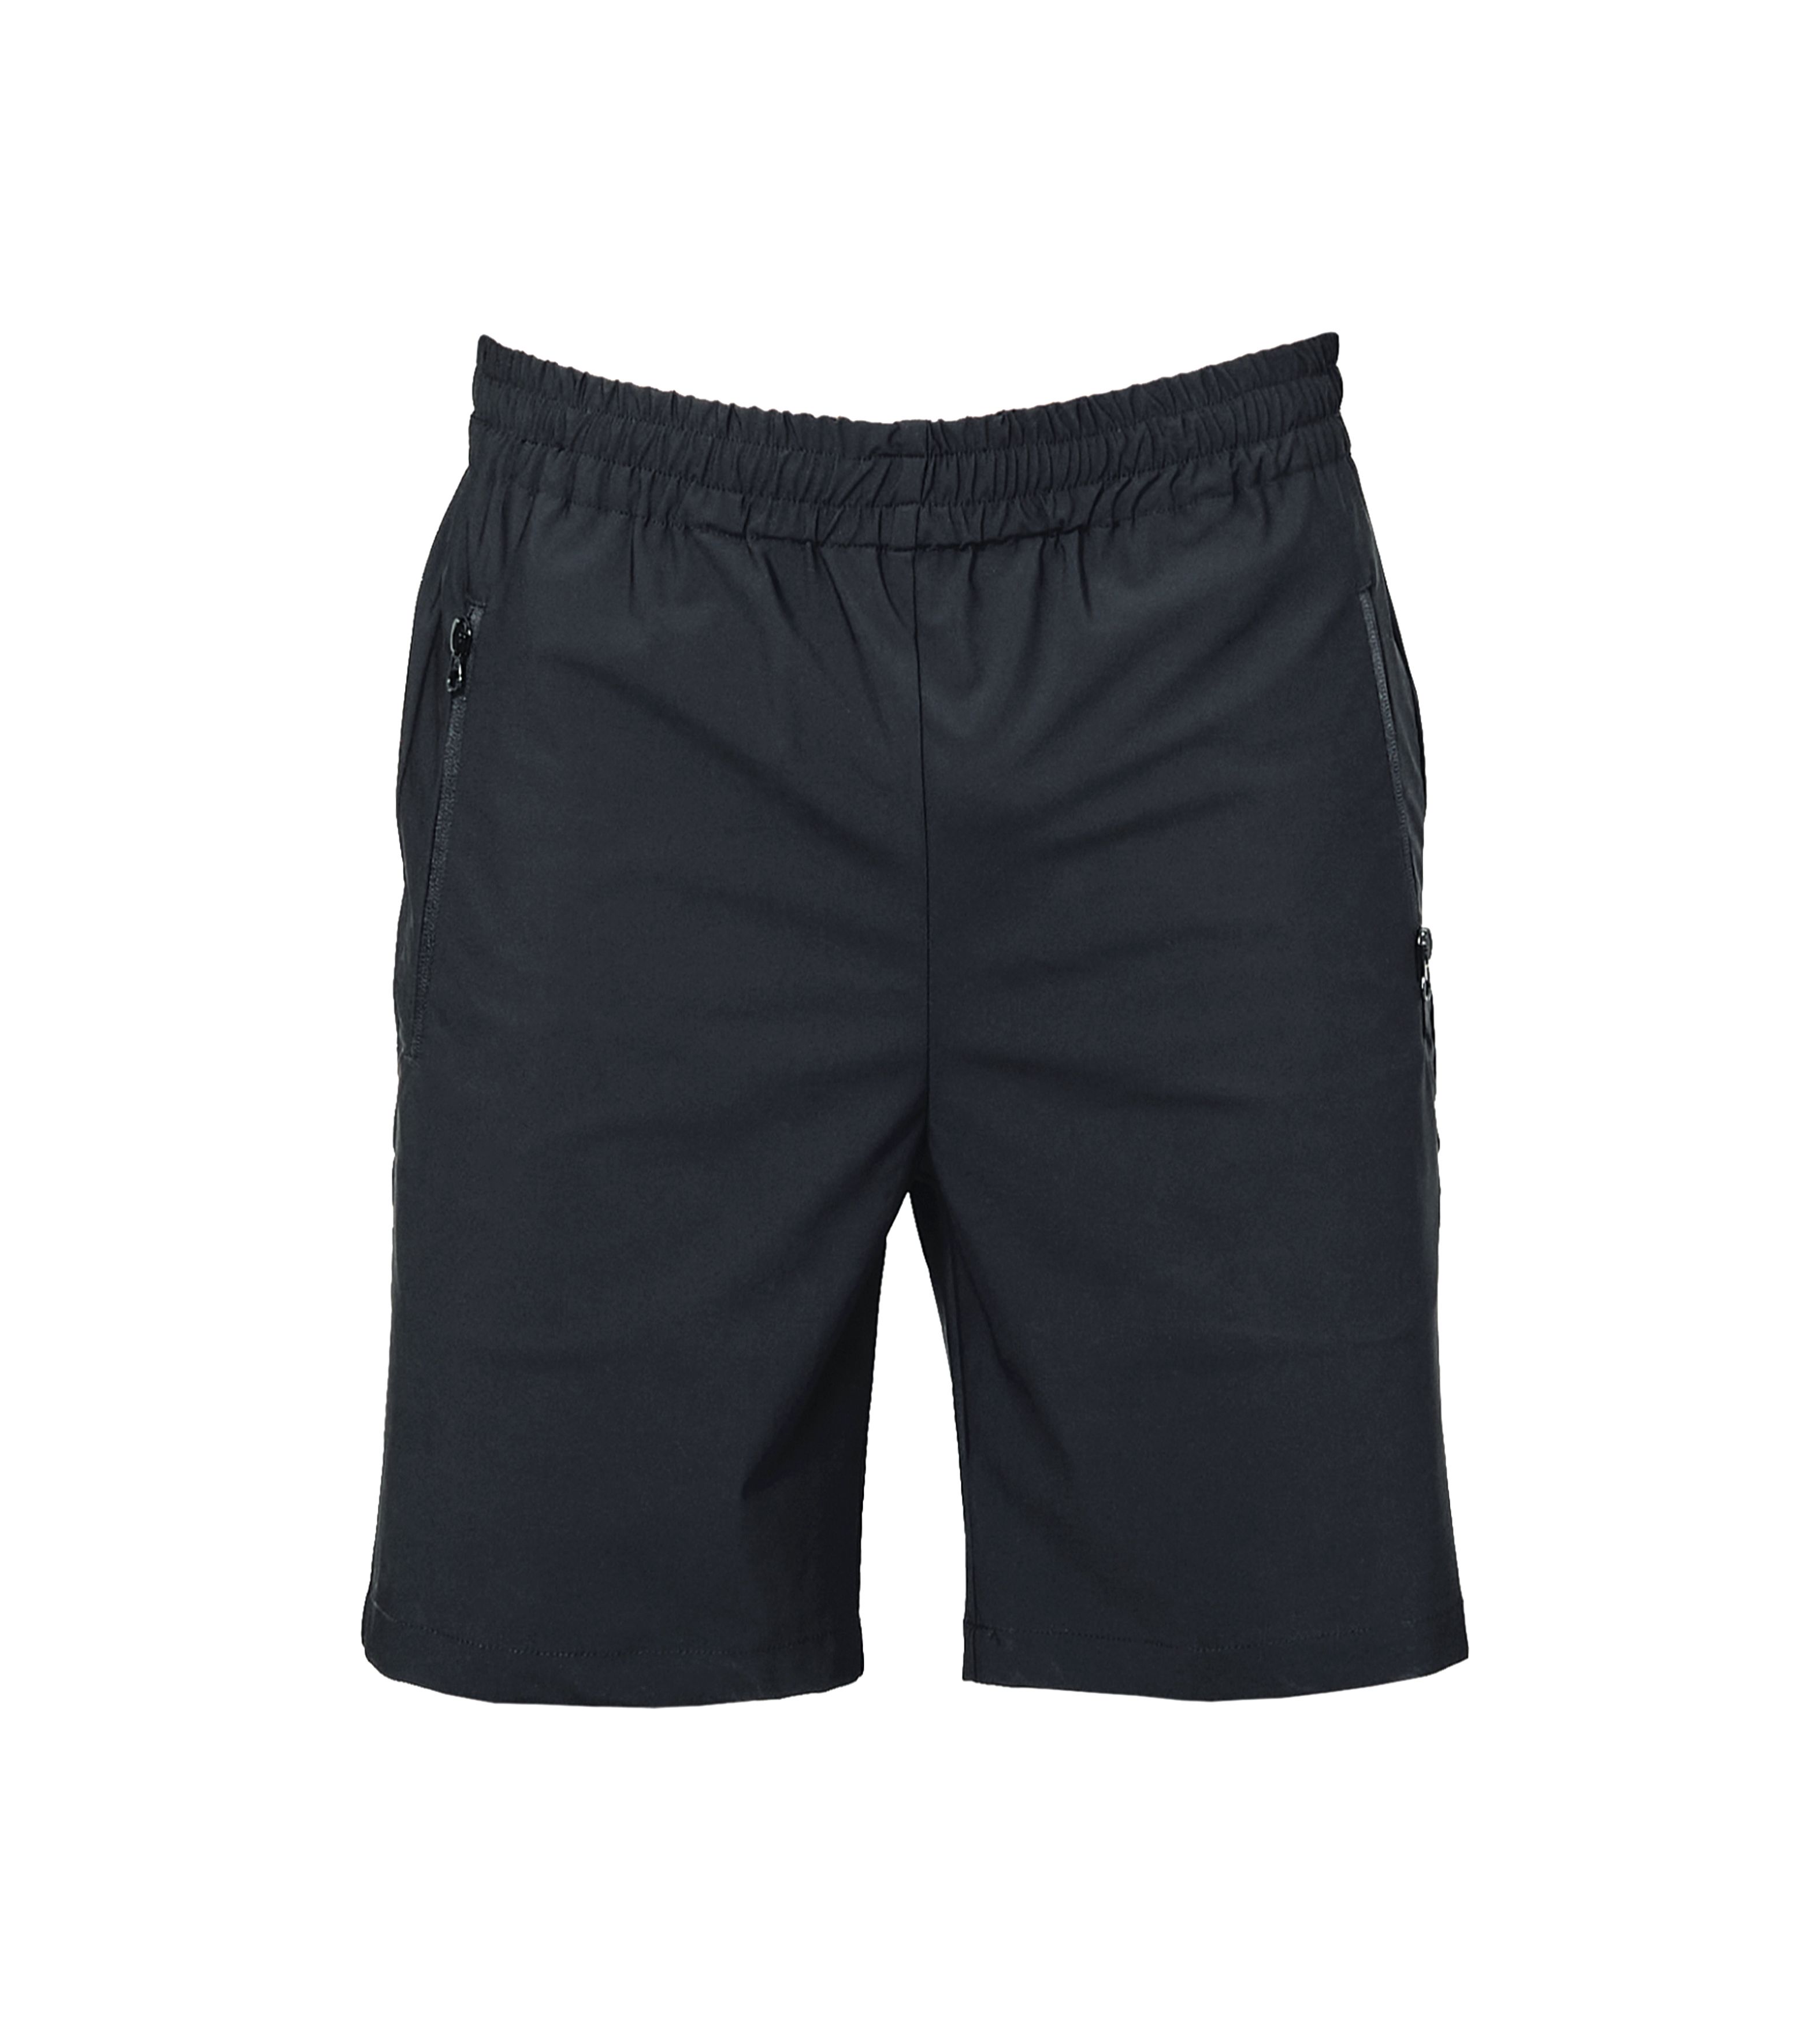 Pant Capri Shorts